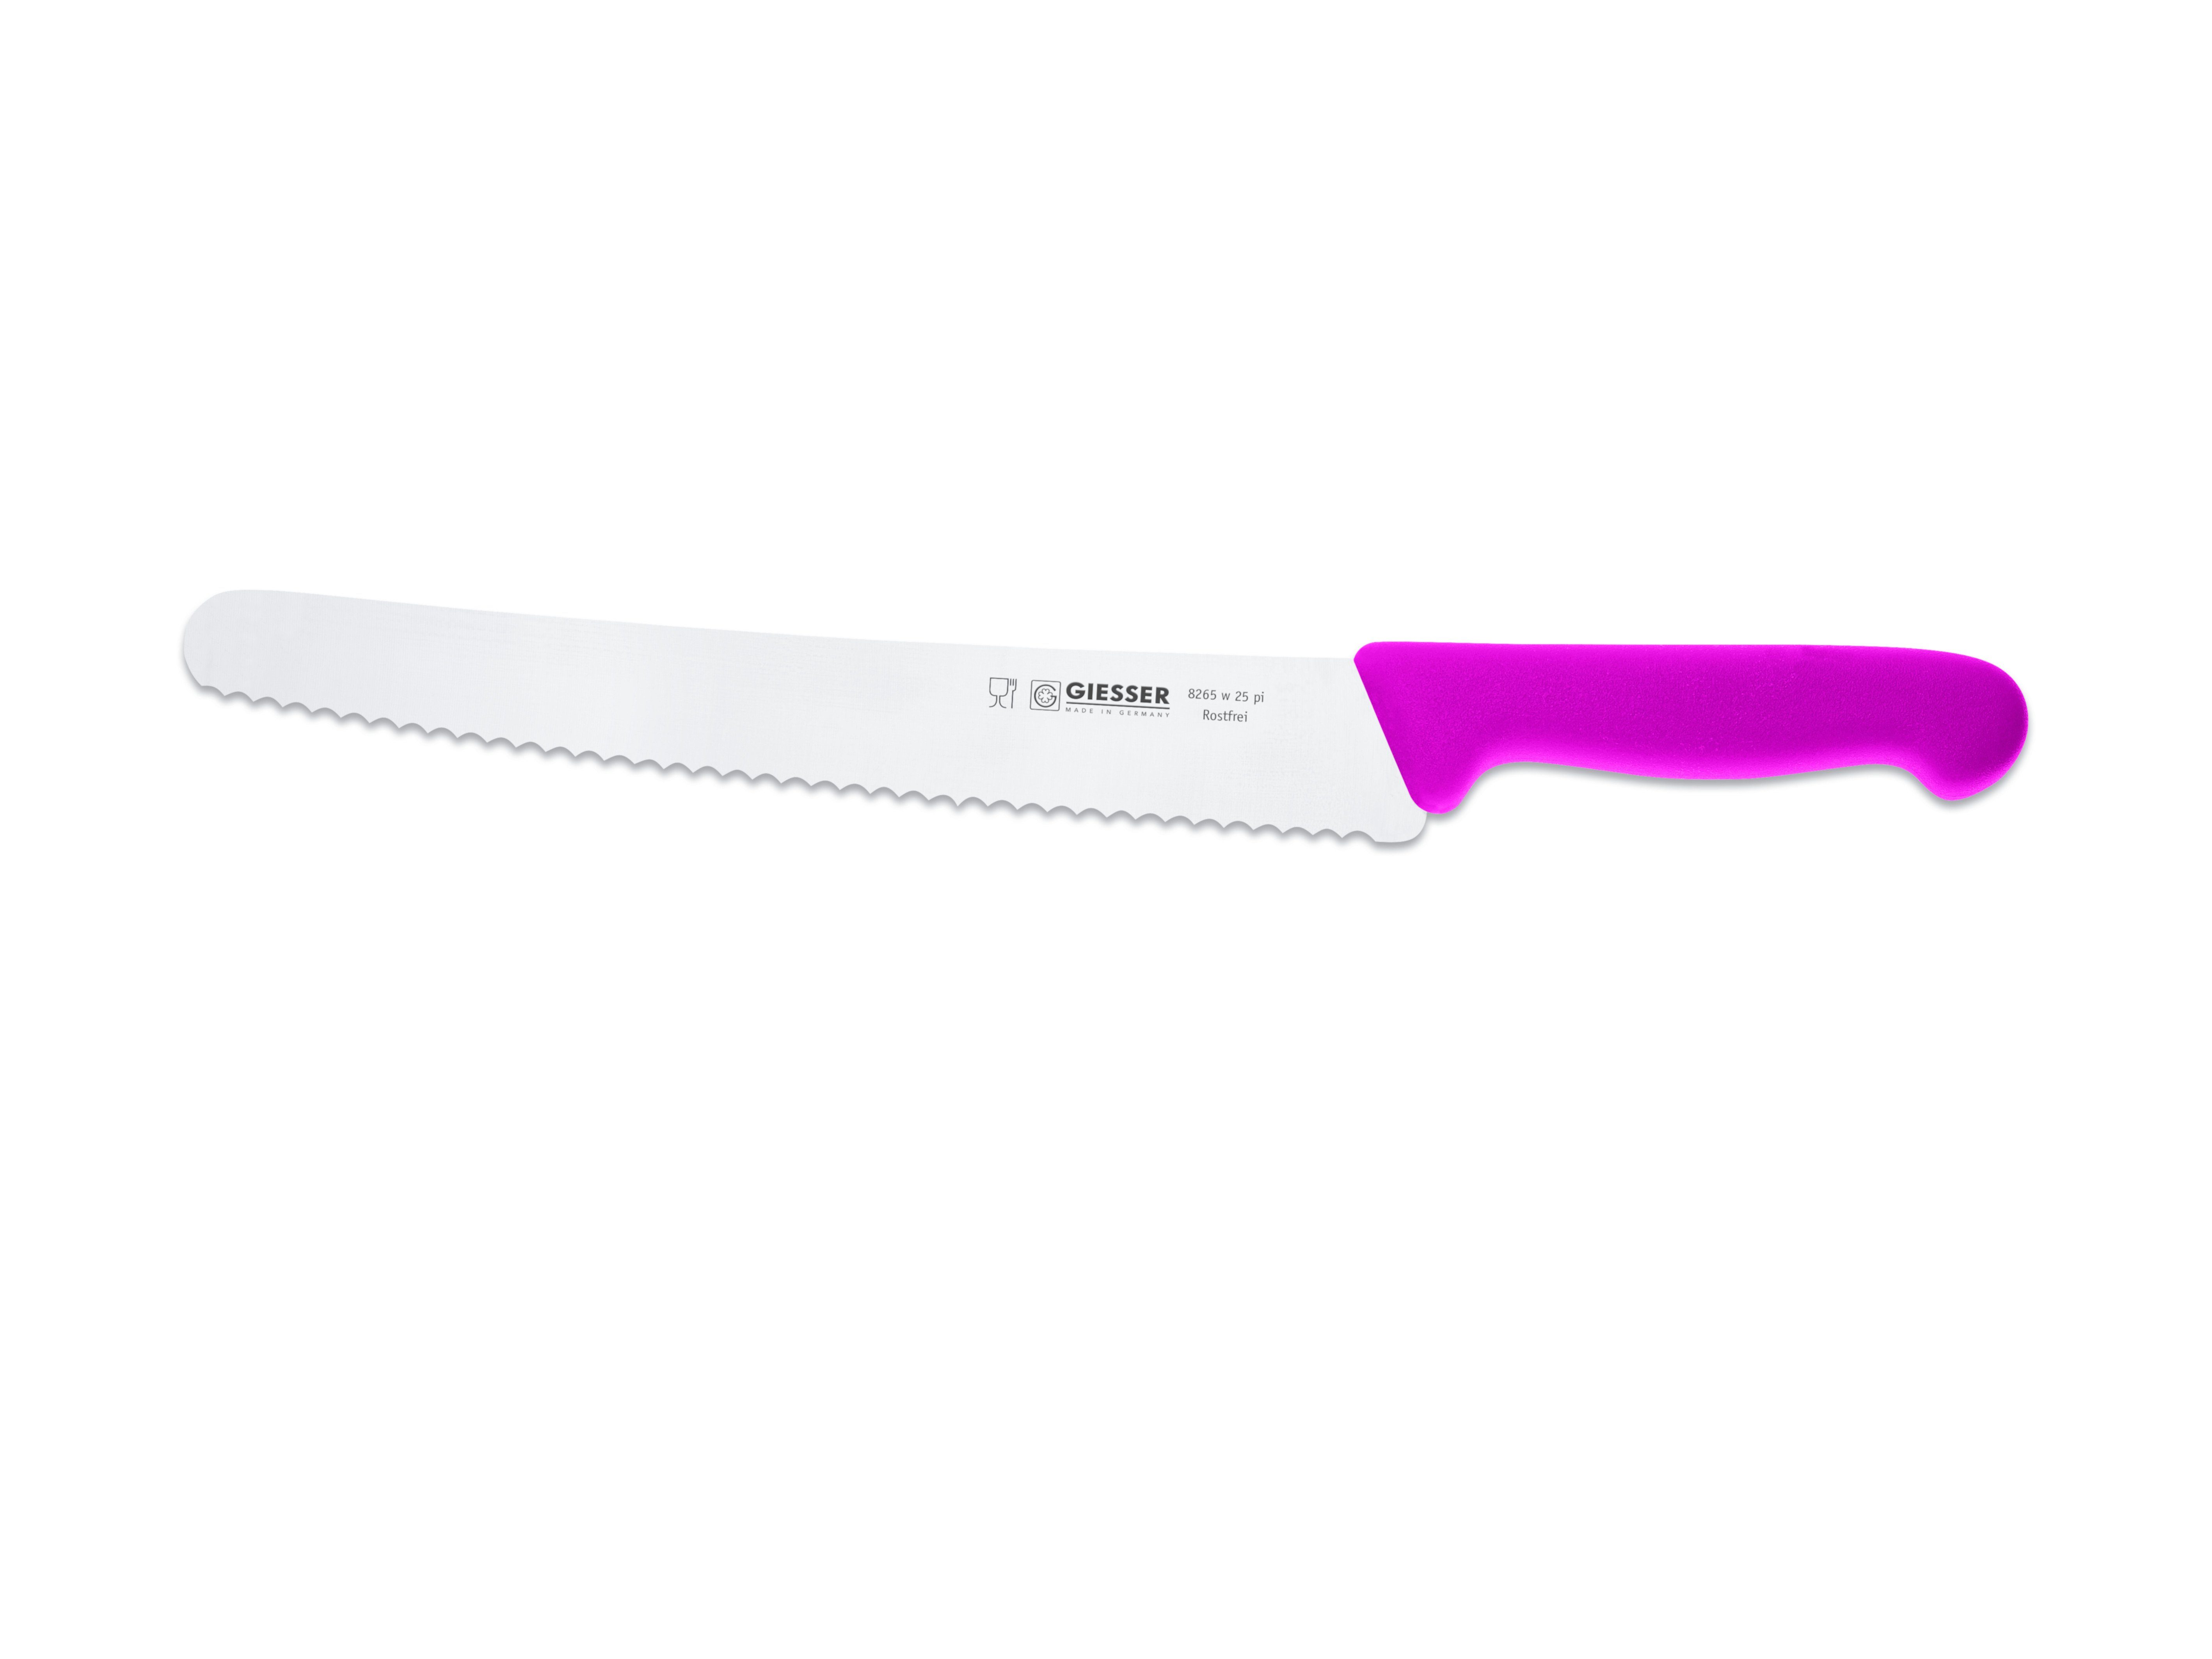 Giesser Messer Brotmesser Universalmesser 8265 w 25, kunststoffgespritzt pink